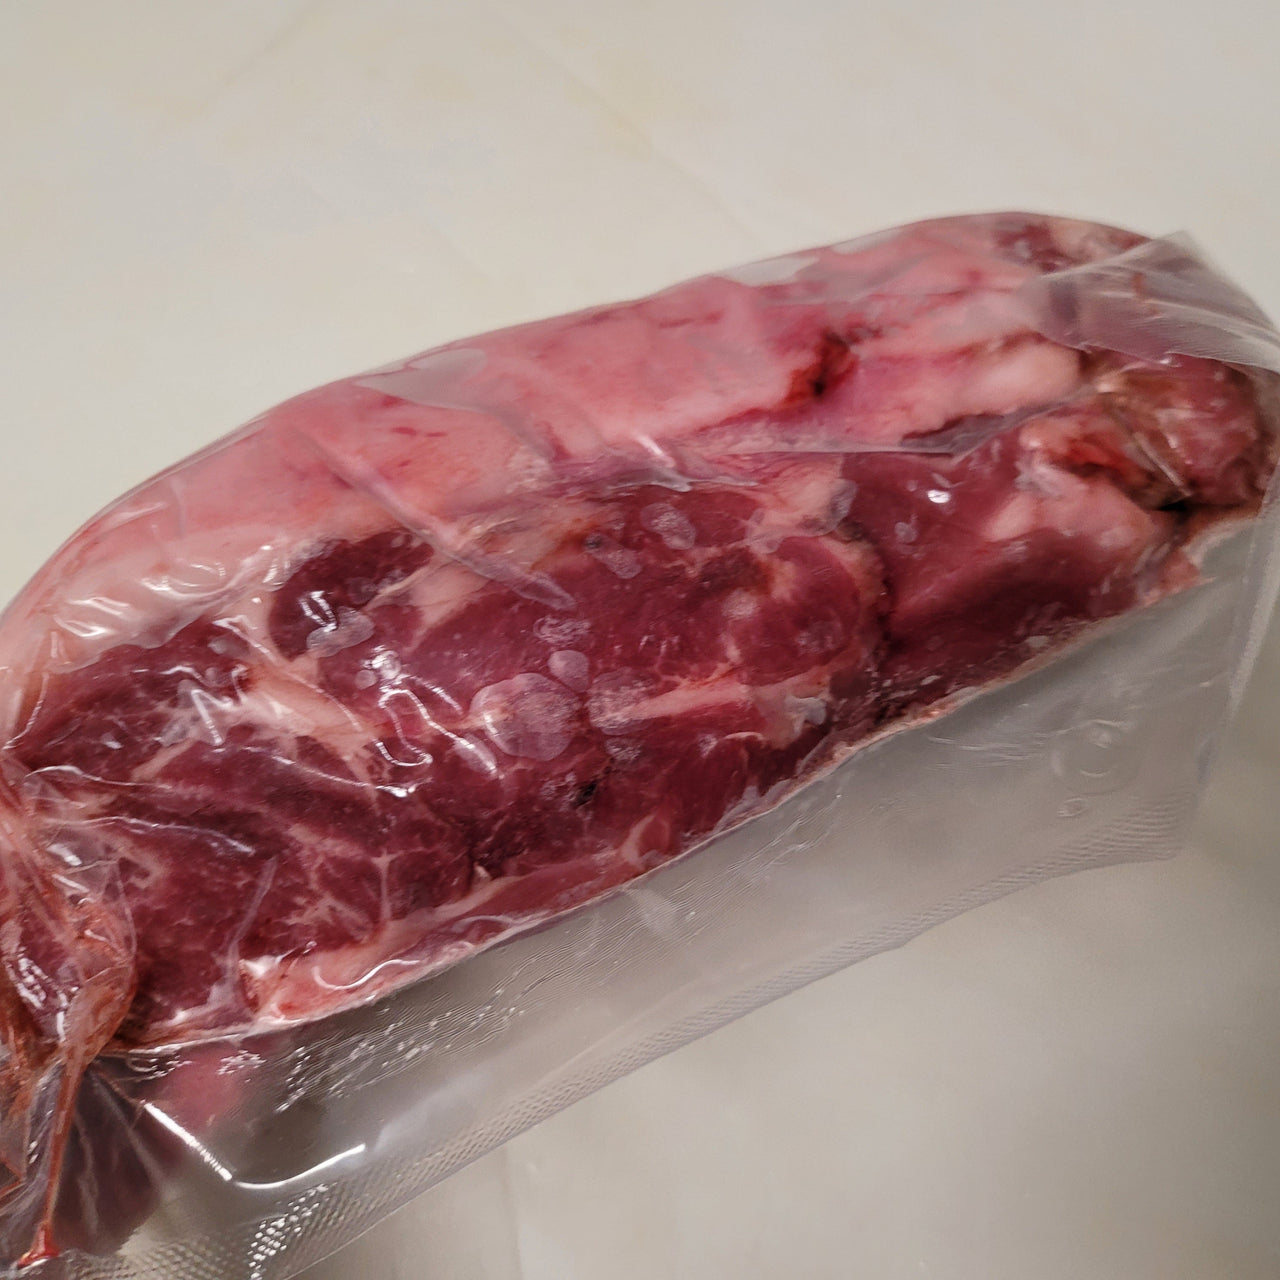 Pastured Pork Butt Roast (Bone Out) Upper Portion Of The Shoulder